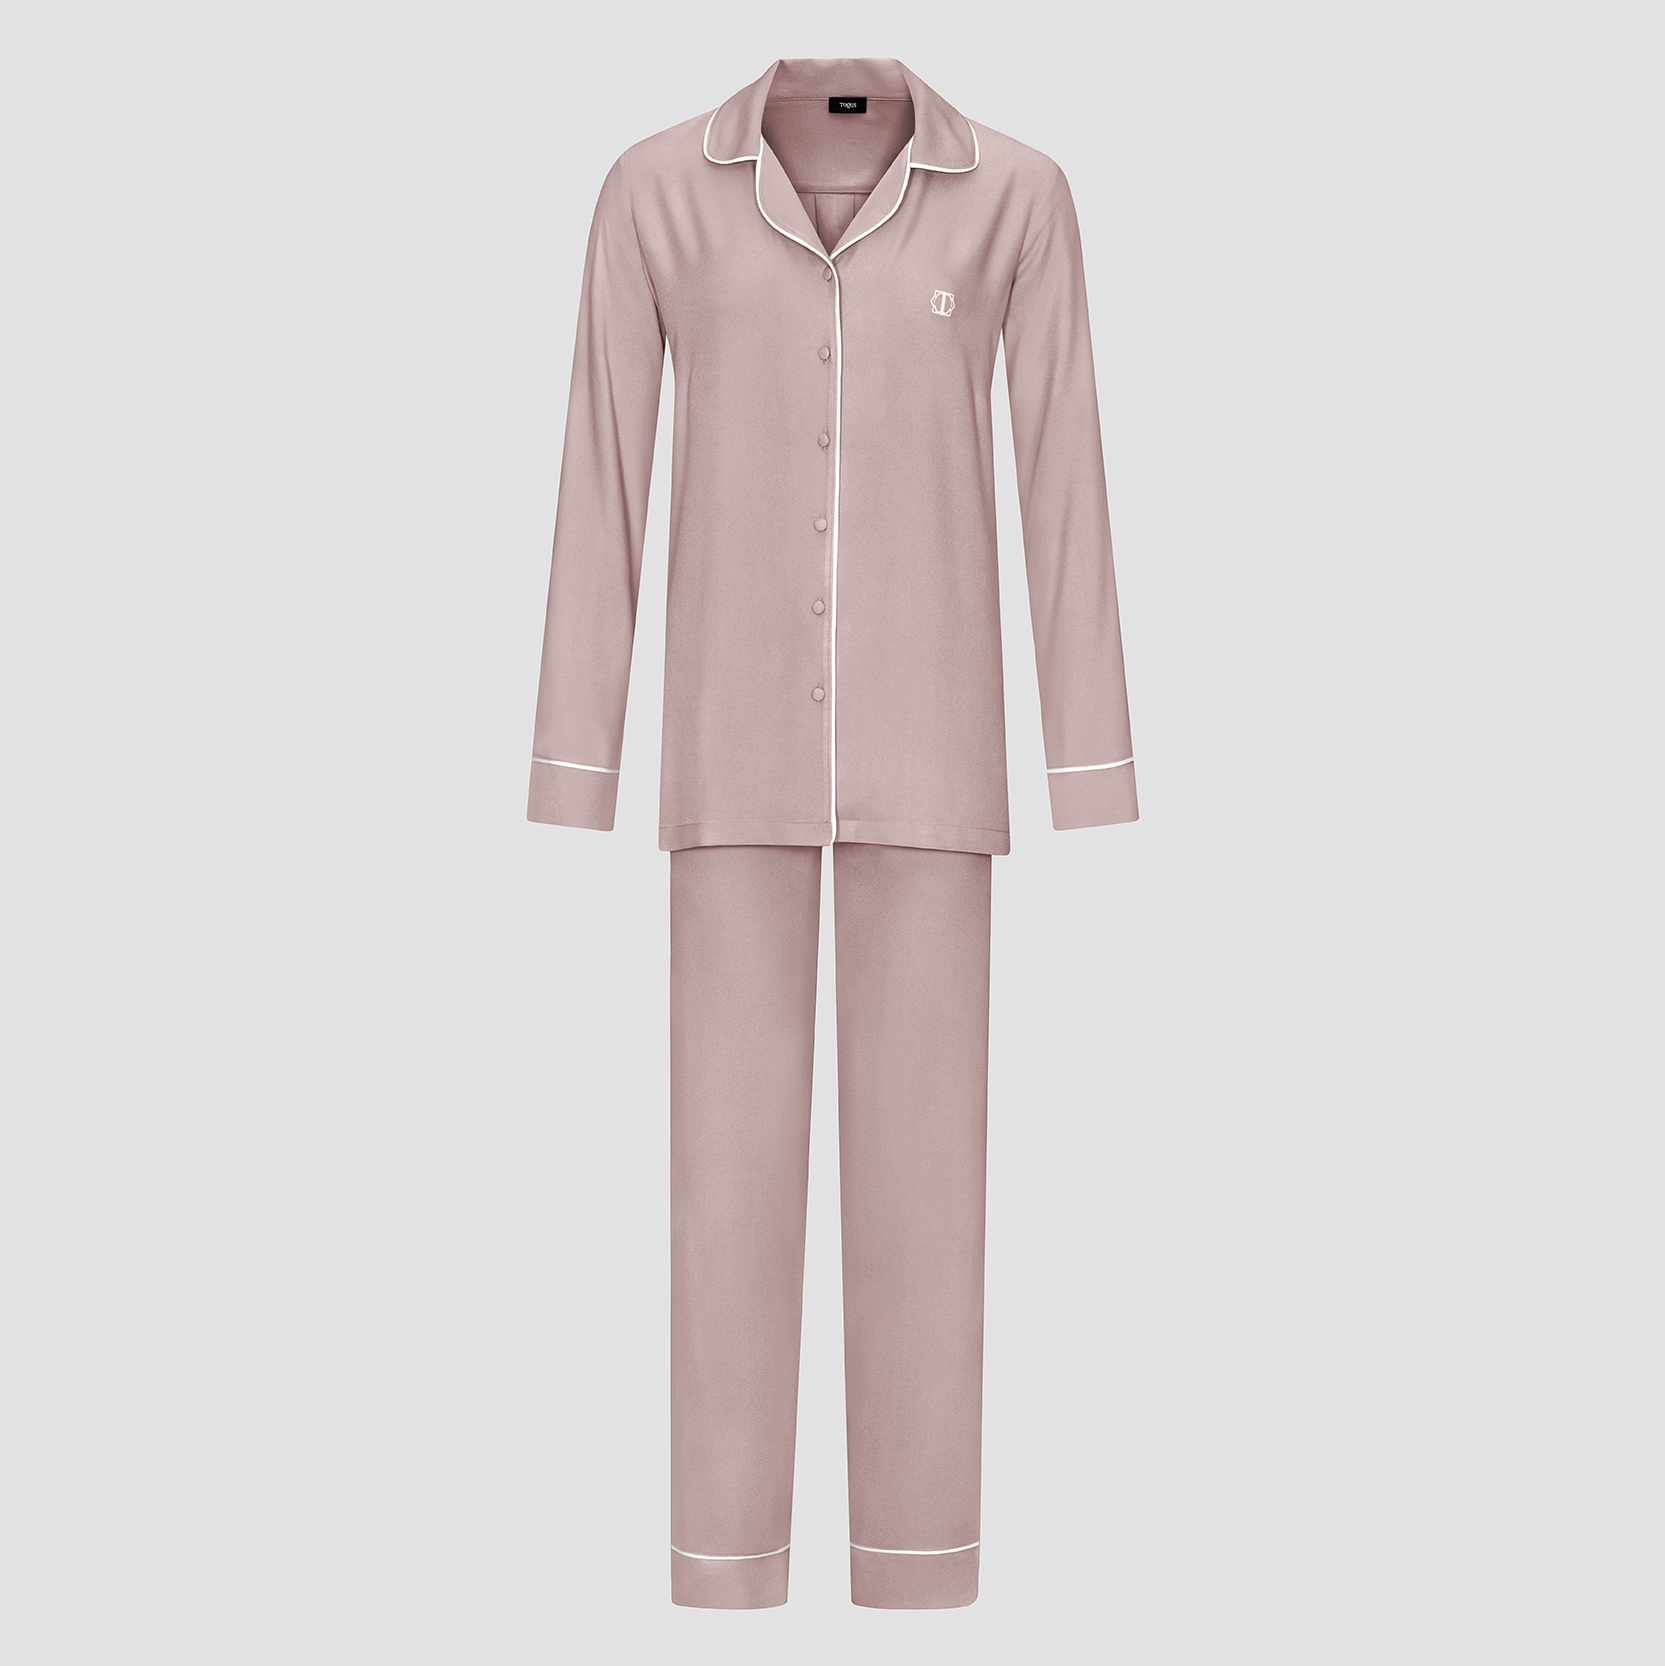 Пижама женская Togas Рамель розовая 2 предмета пижама для мальчиков togas teens харпер серо черная 164 см